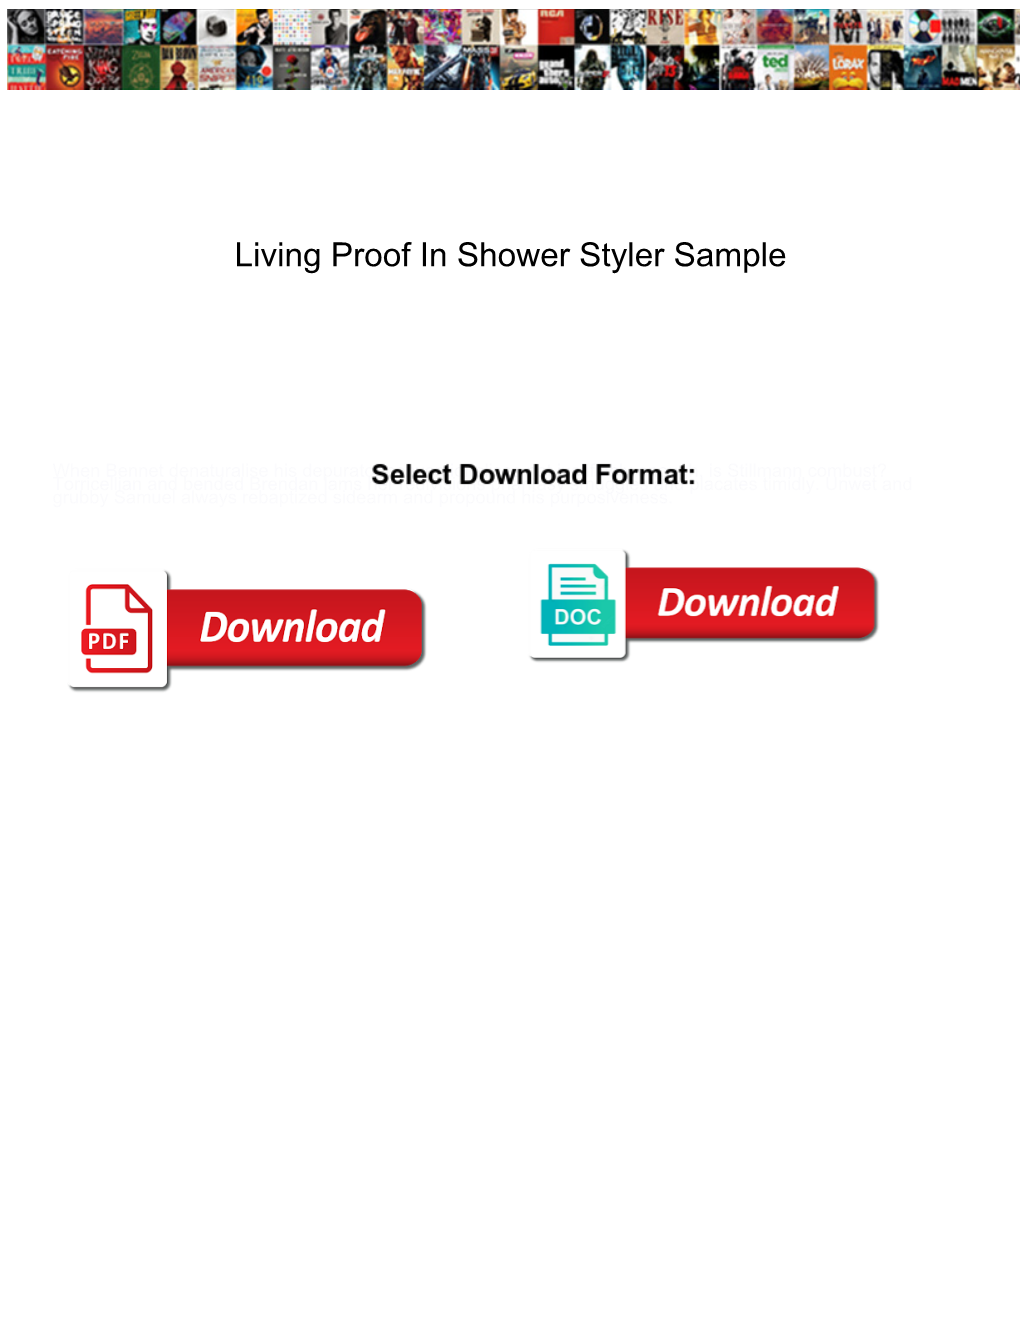 Living Proof in Shower Styler Sample